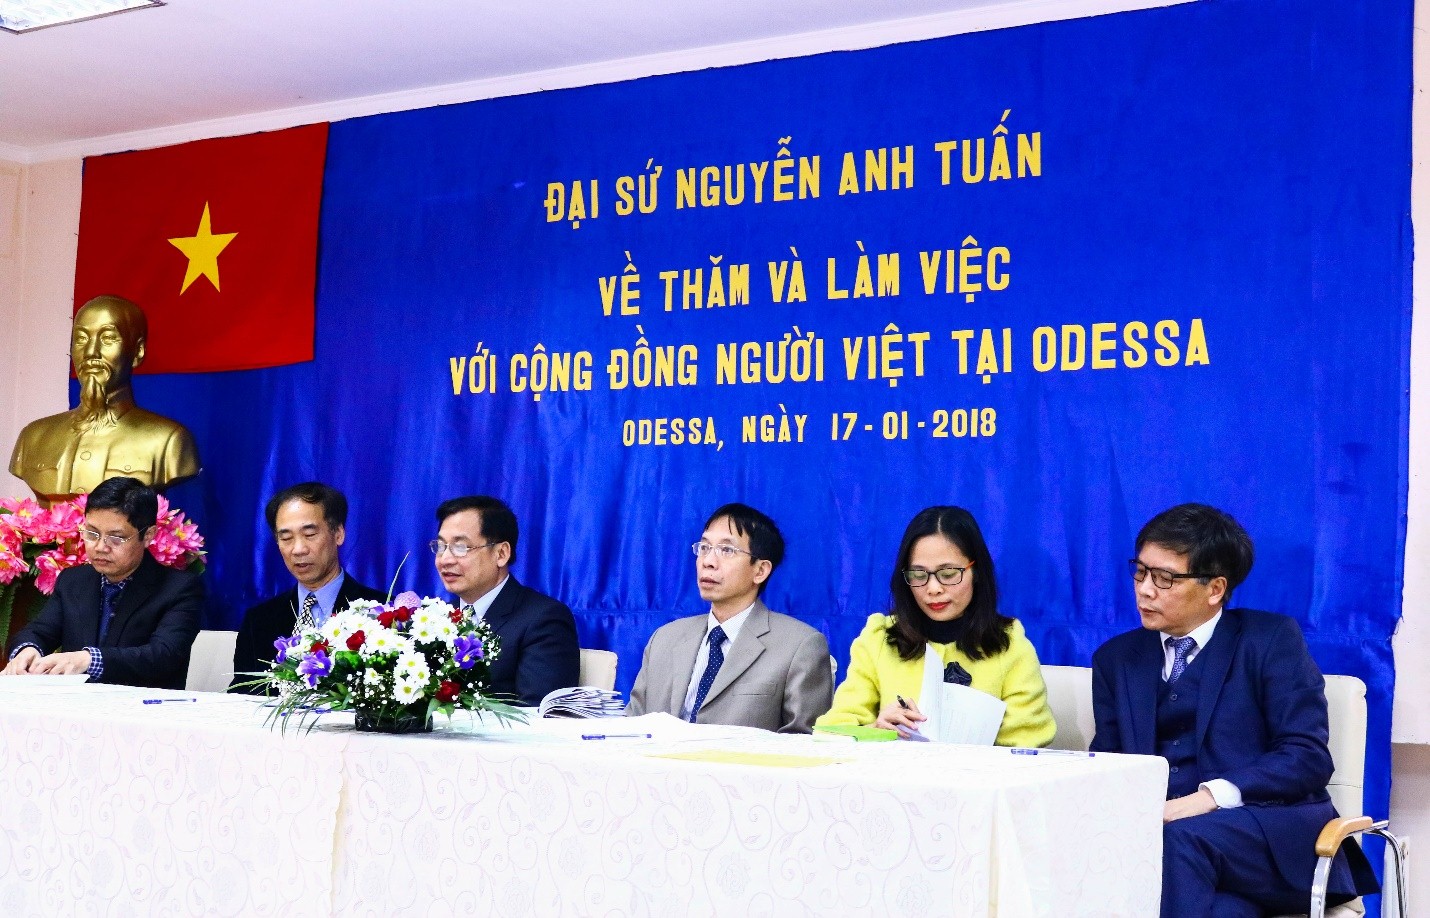 Đại sứ Nguyễn Anh Tuấn về thăm và làm việc với cộng đồng người Việt tại Odessa